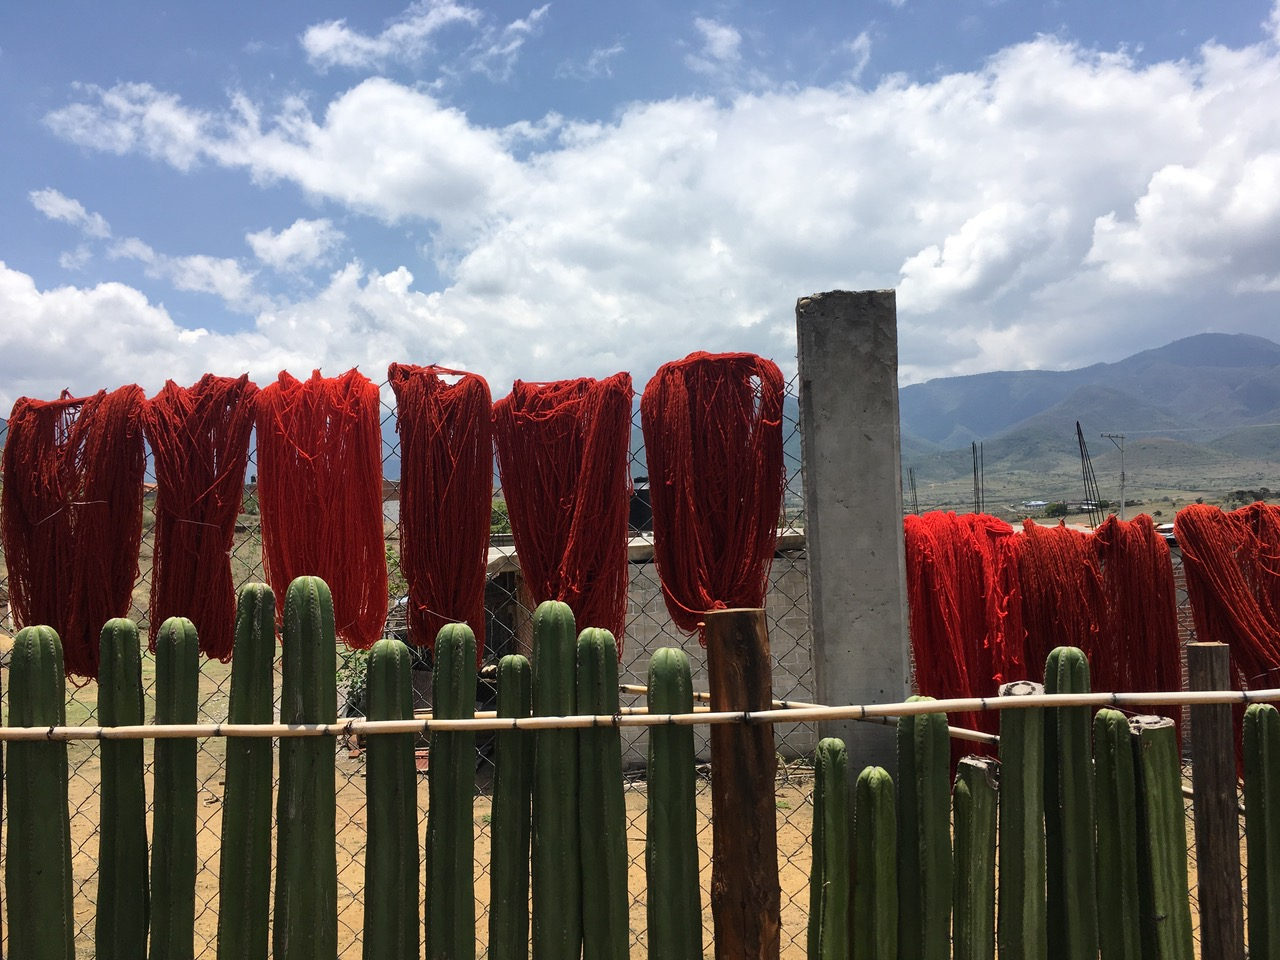 Oaxaca, Meksyk — wełna barwiona naturalnymi metodami (Fot. Archiwum prywatne)